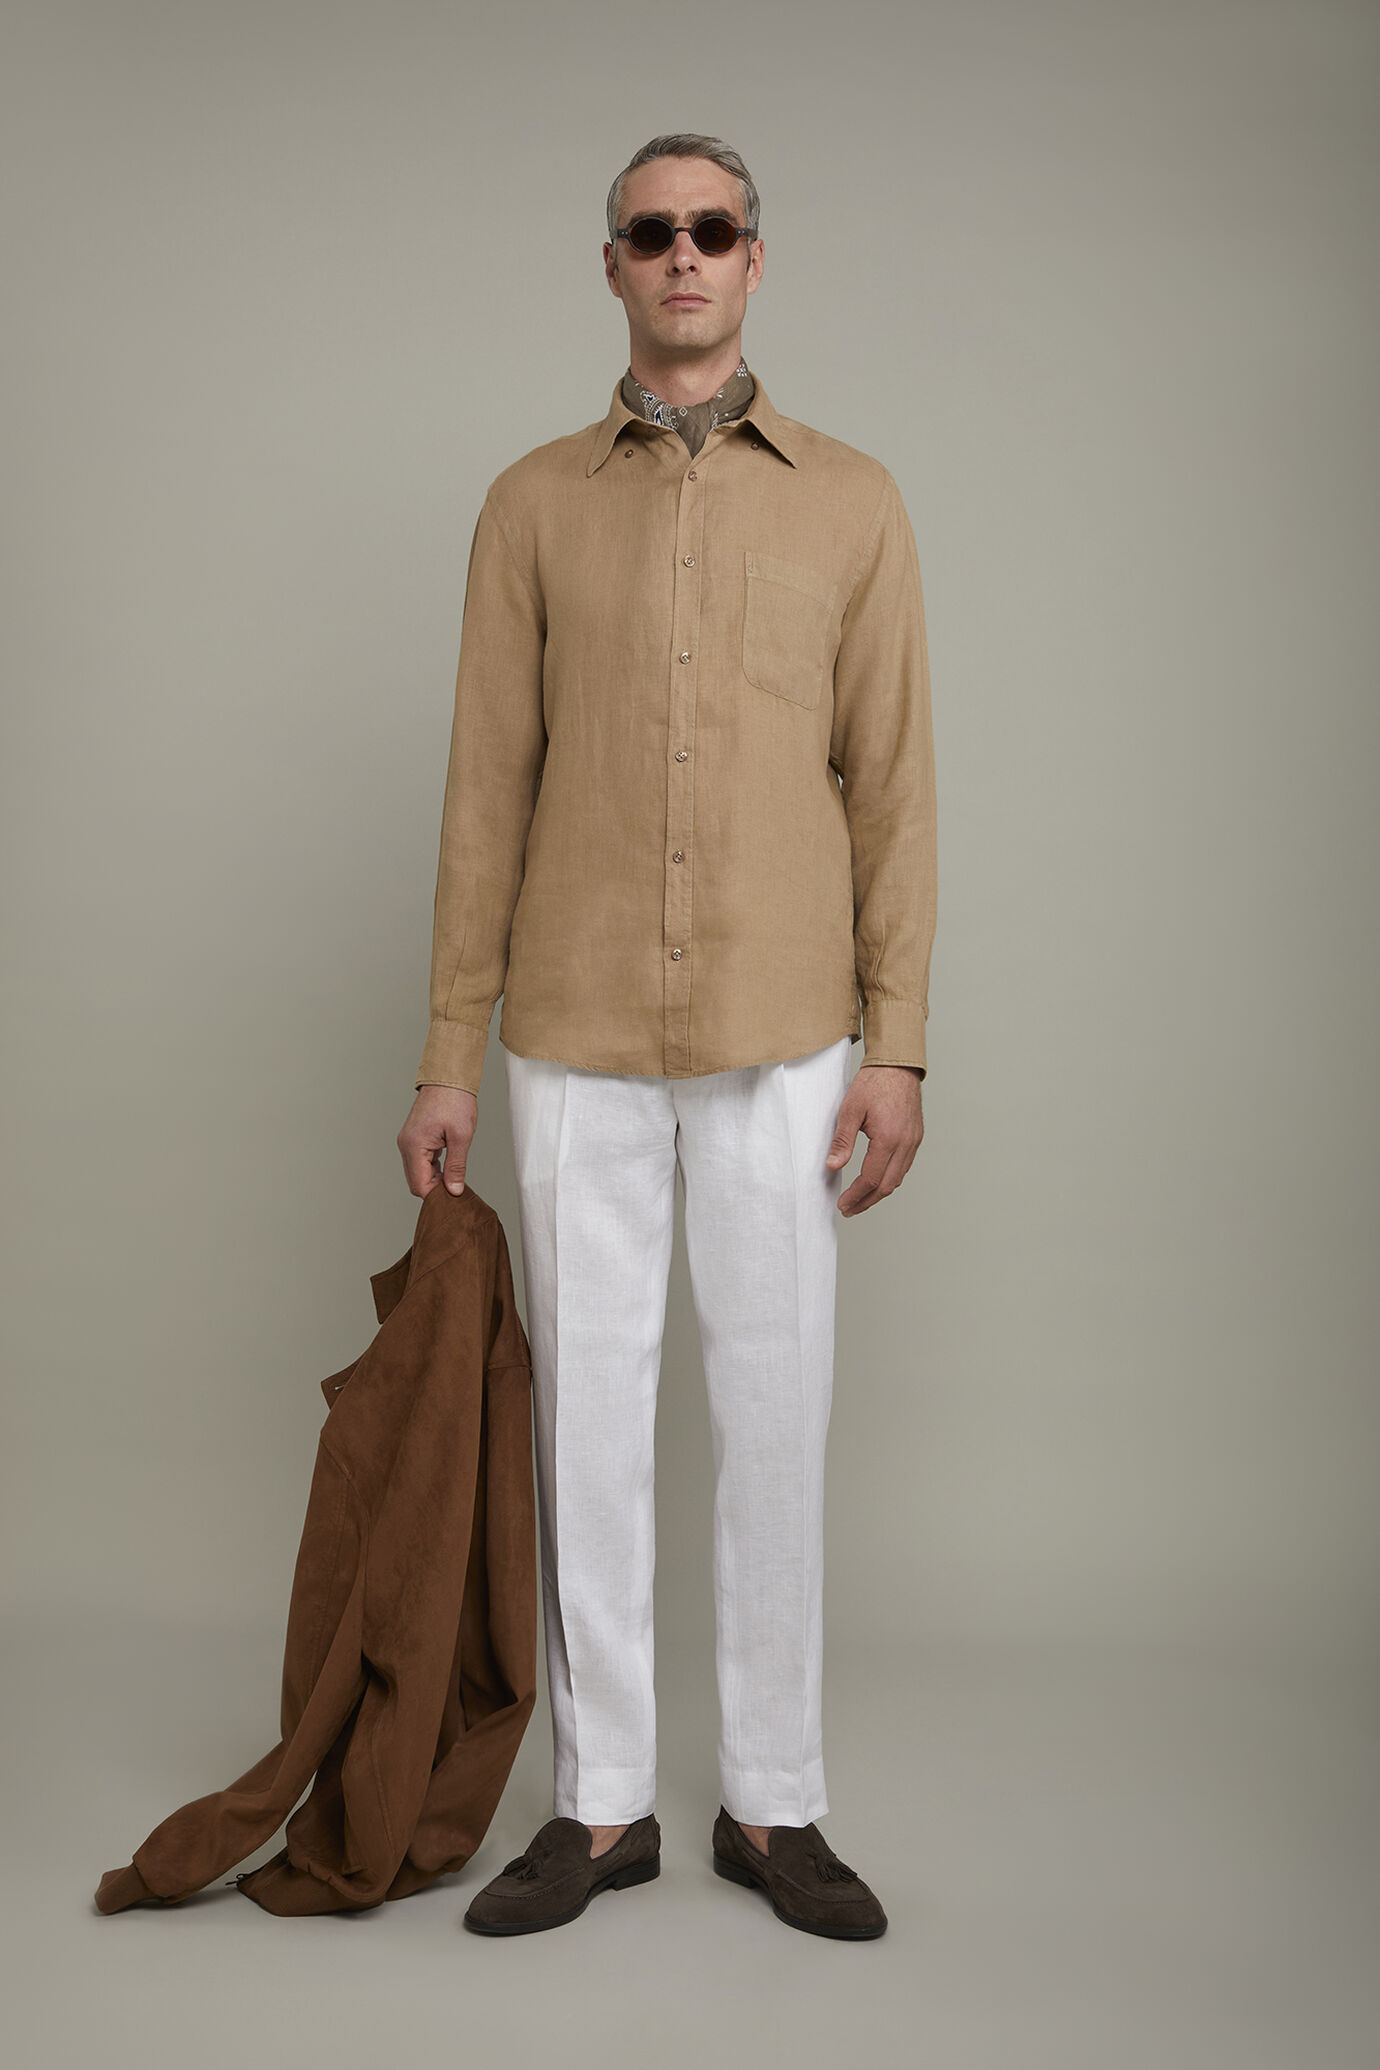 Men’s casual shirt button down collar 100% linen comfort fit